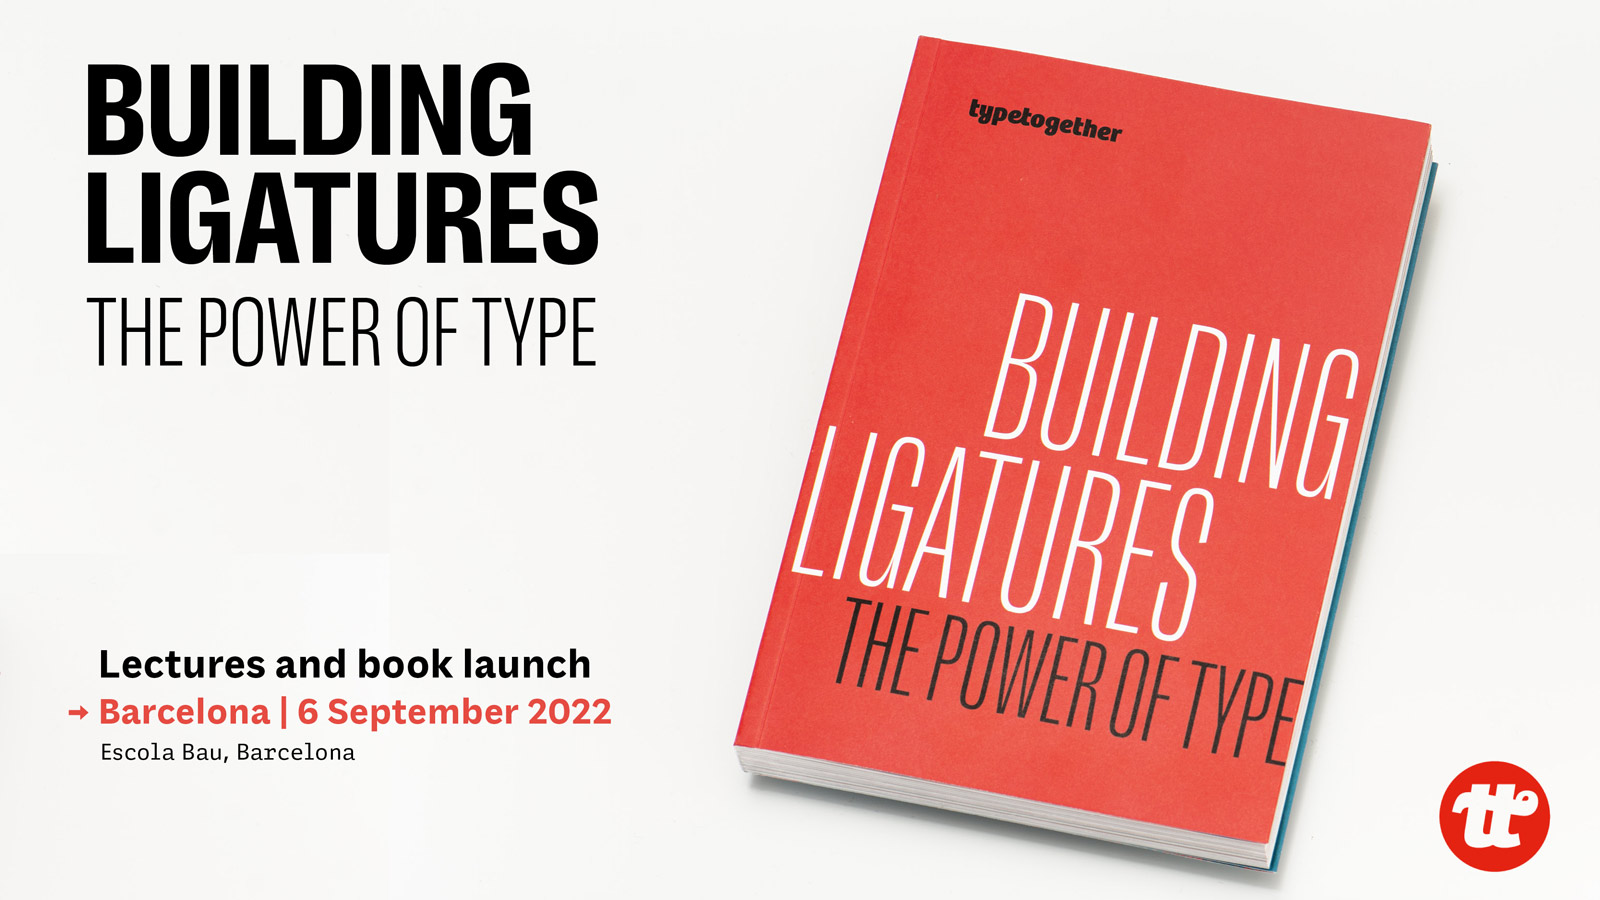 Building Ligatures book & Barcelona event